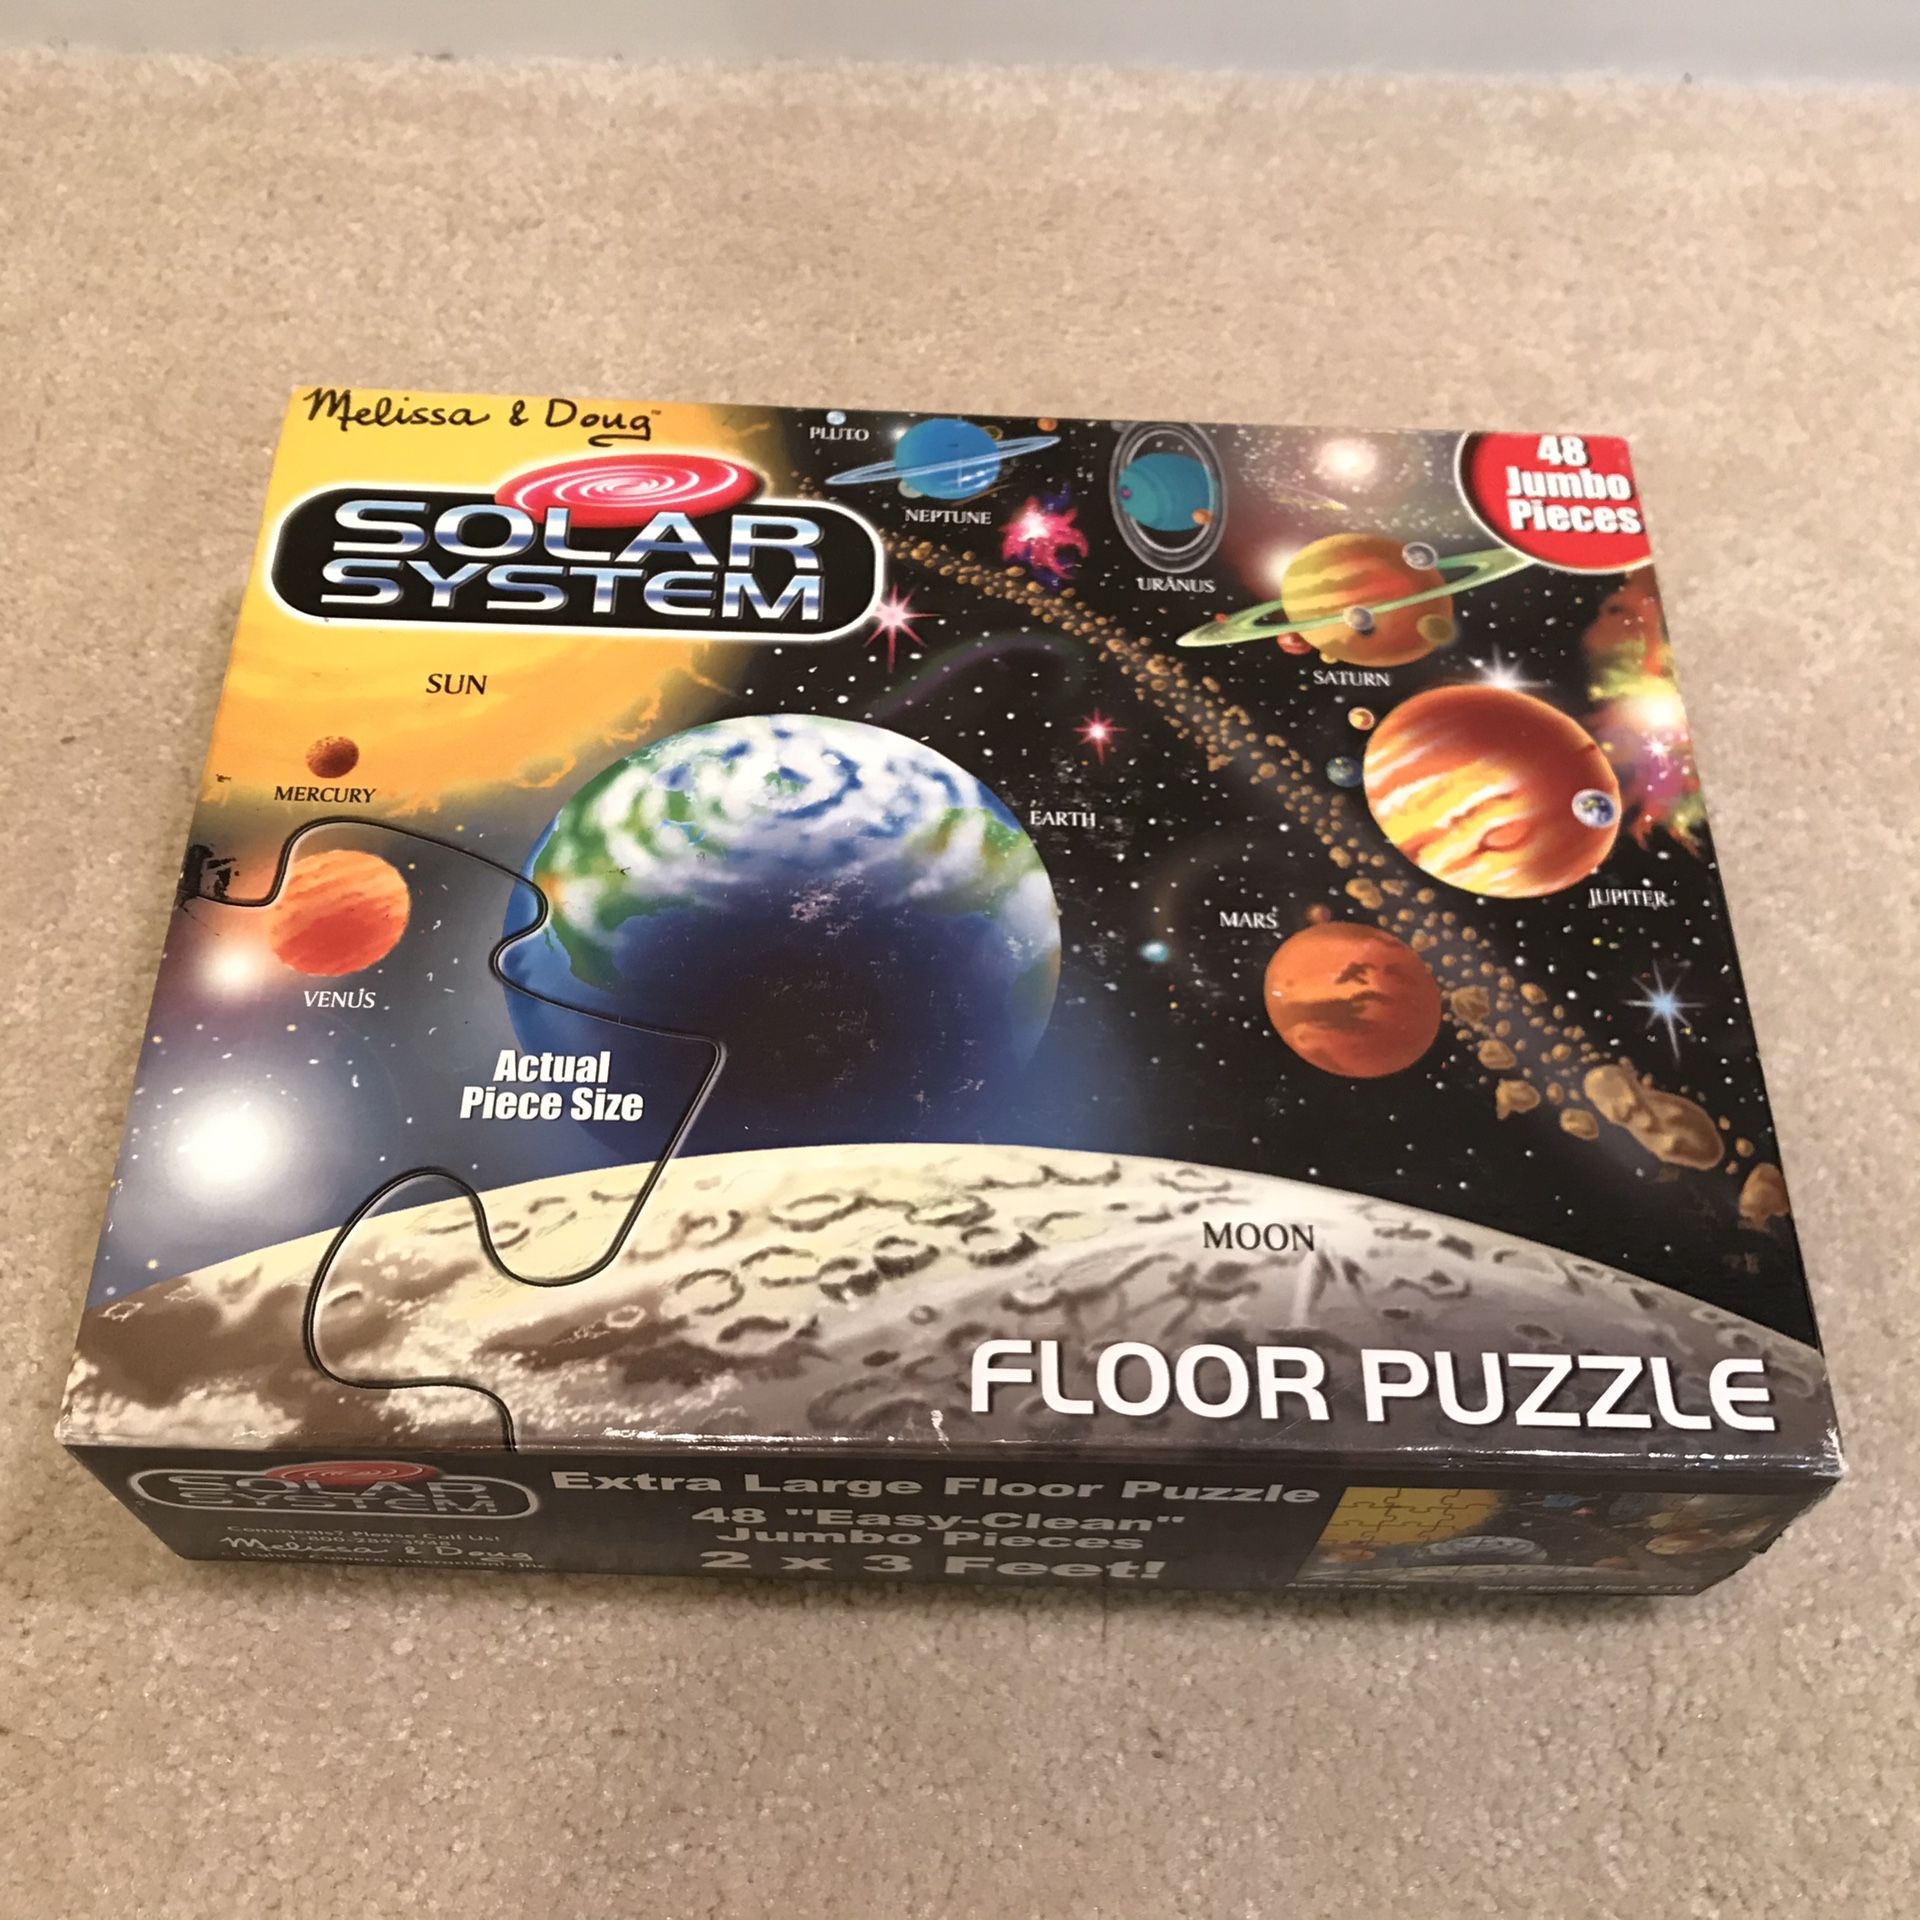 Melissa & Doug Solar System Floor Puzzle 48 pcs Pieces - Complete